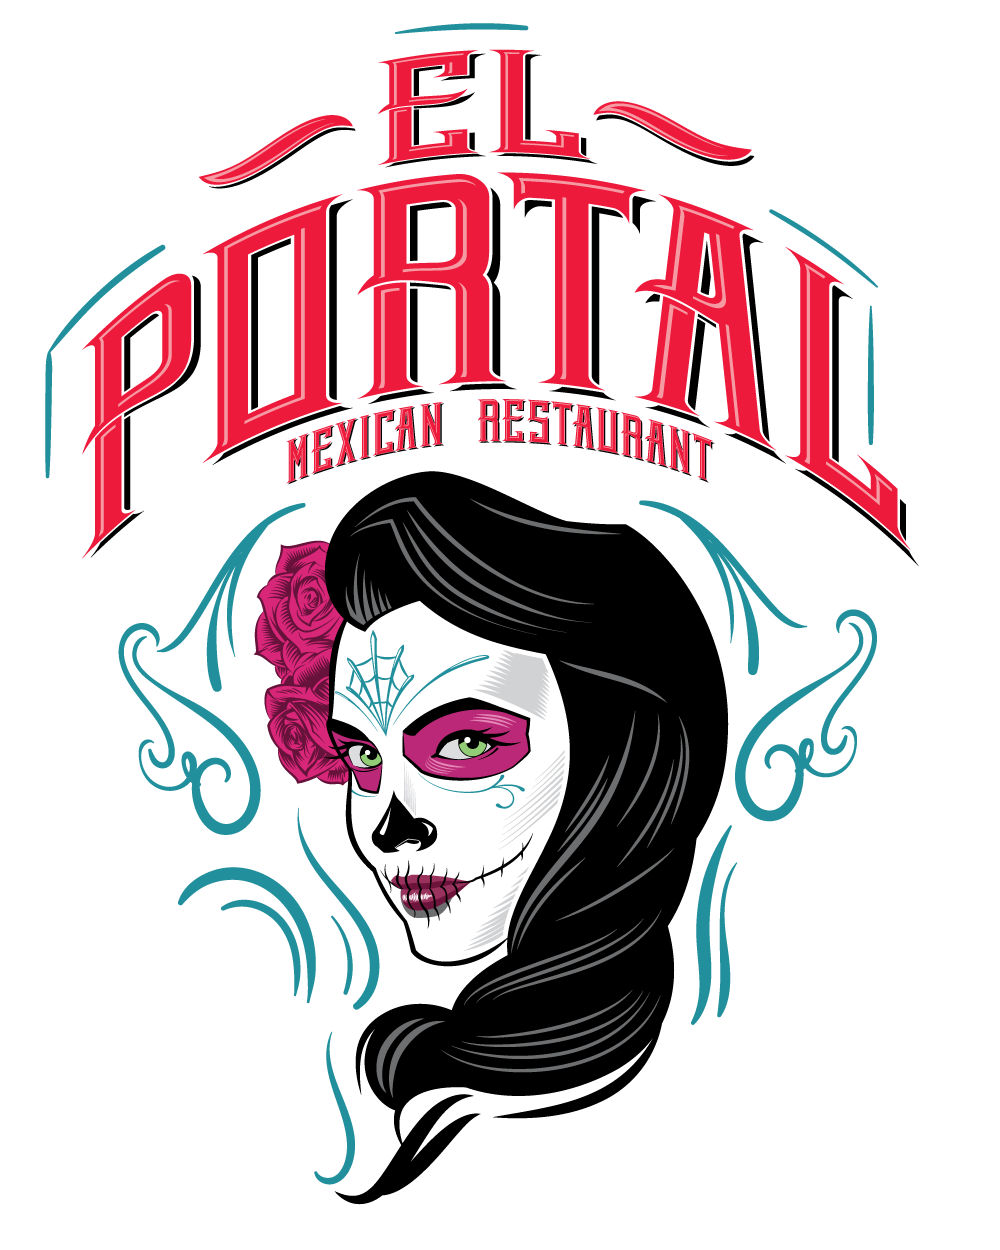 El Portal Mexican Restaurant 